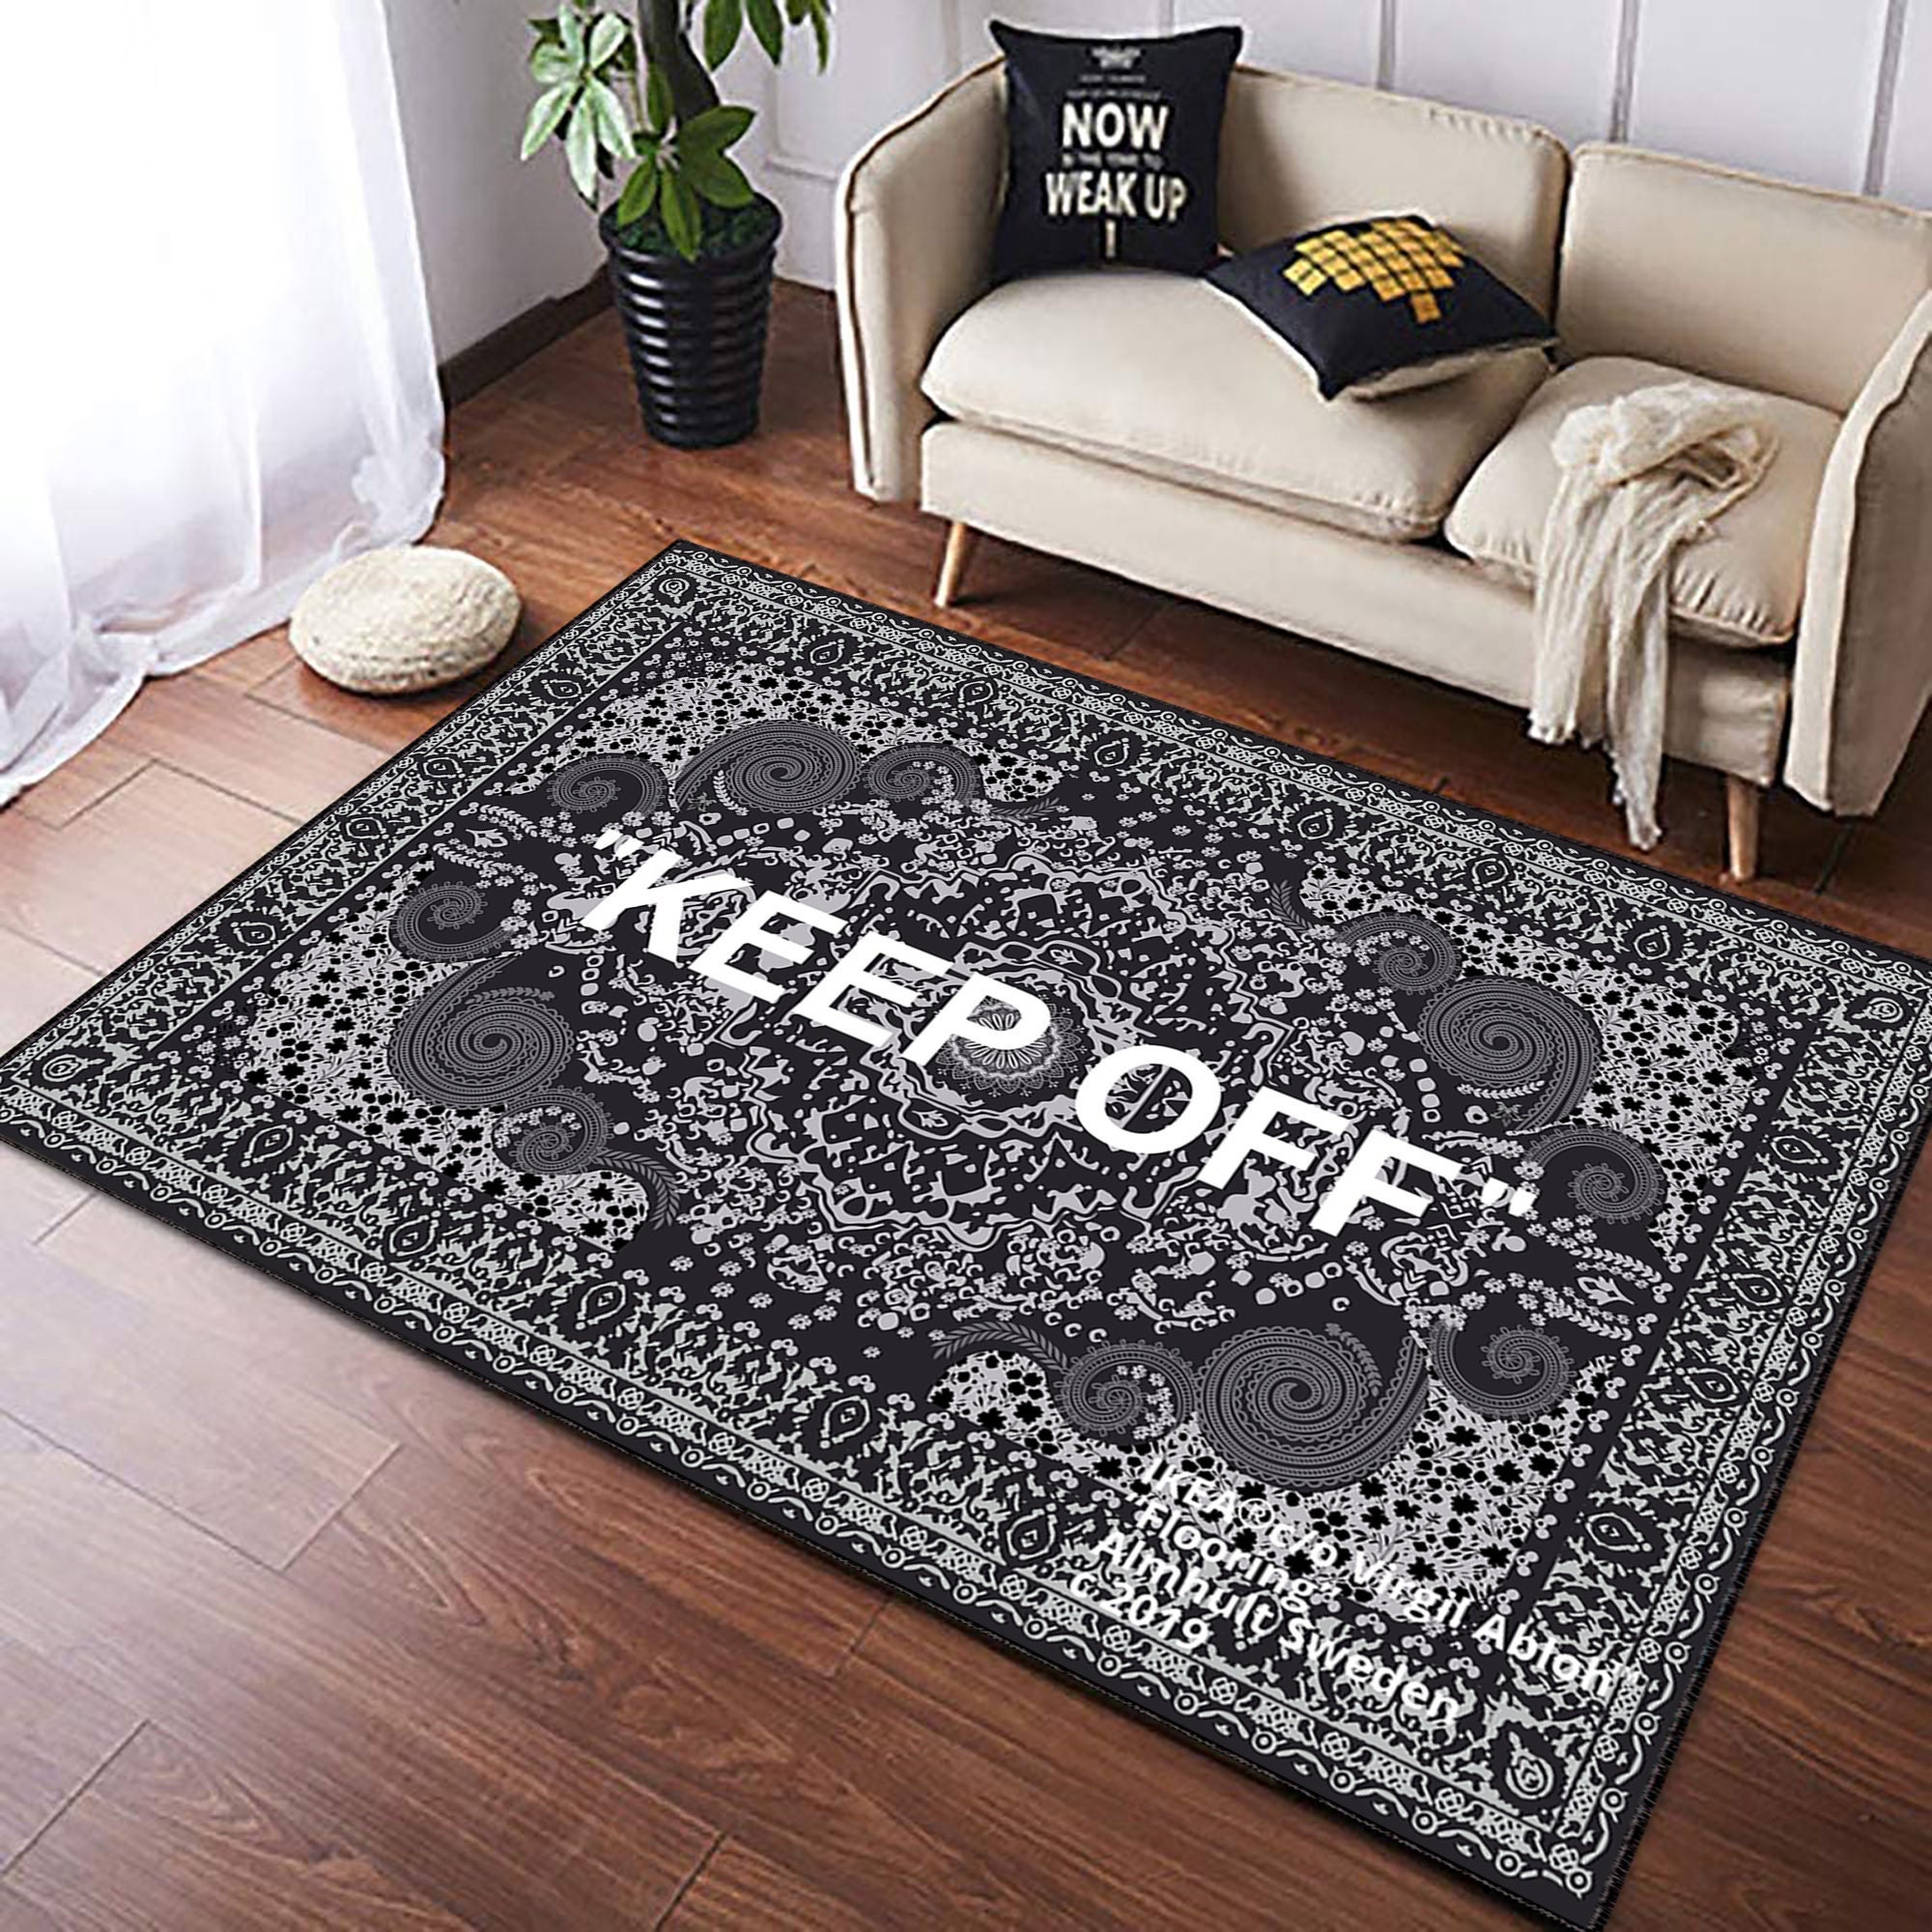 Bape Ft Louis Vuitton Area Carpet Rugs